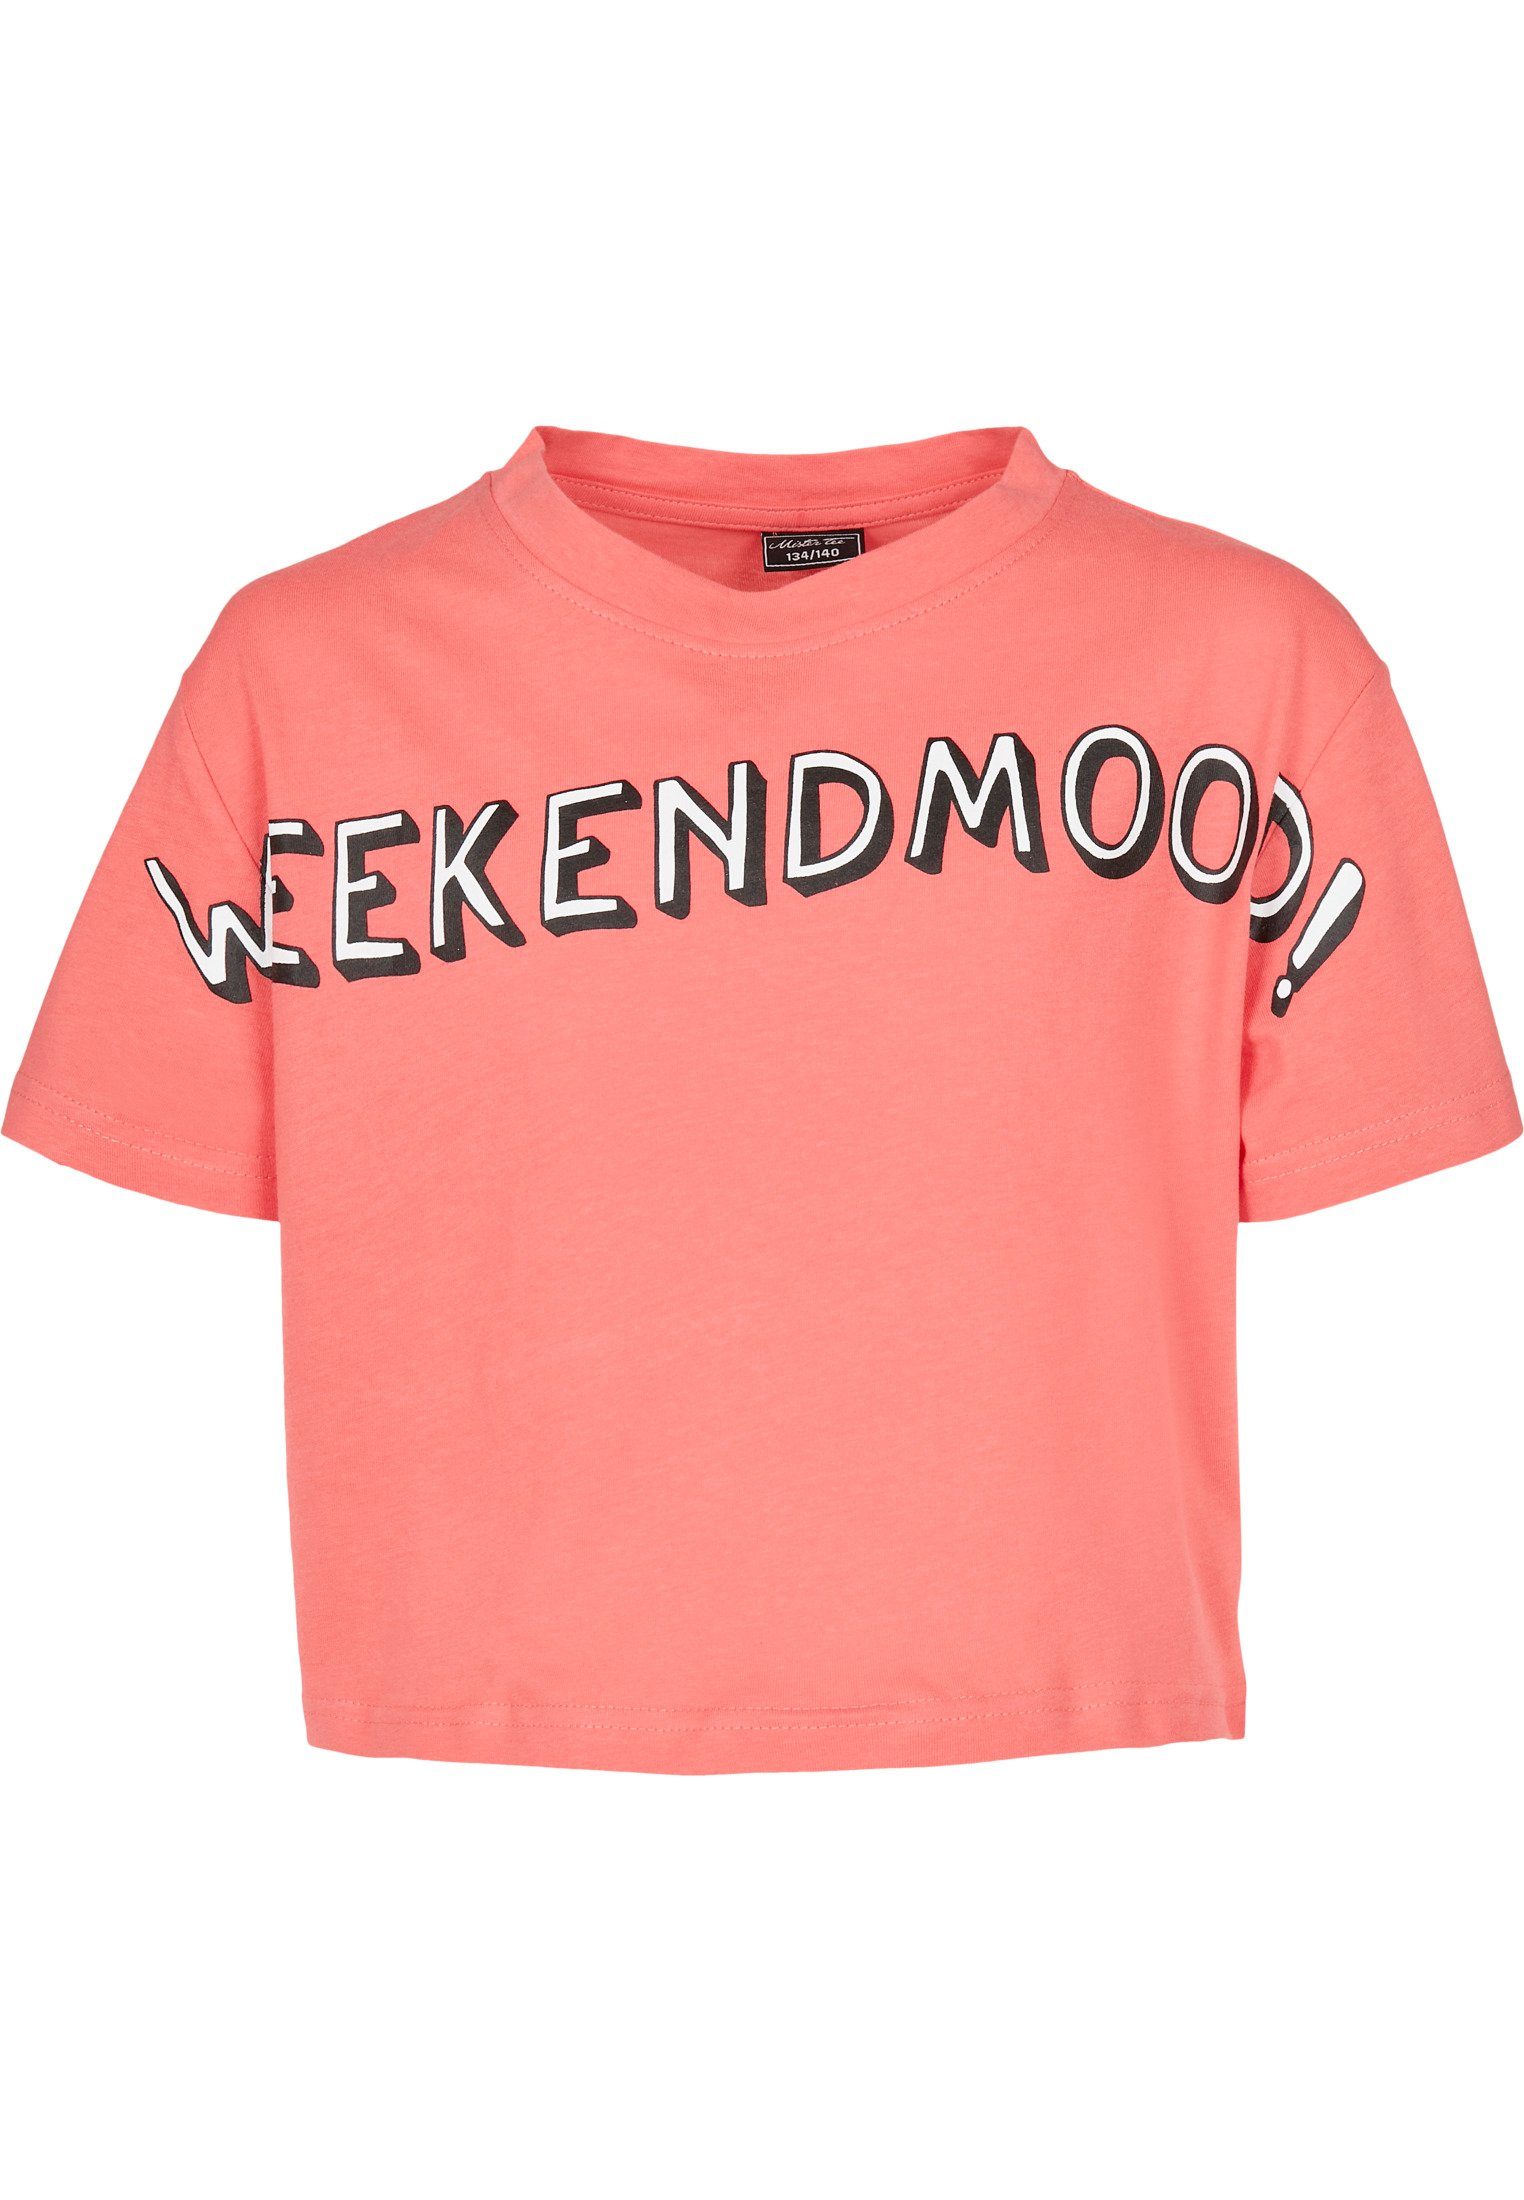 MisterTee T-Shirt Mädchen Kids Weekend Mood Tee T-Shirt -MTK083-